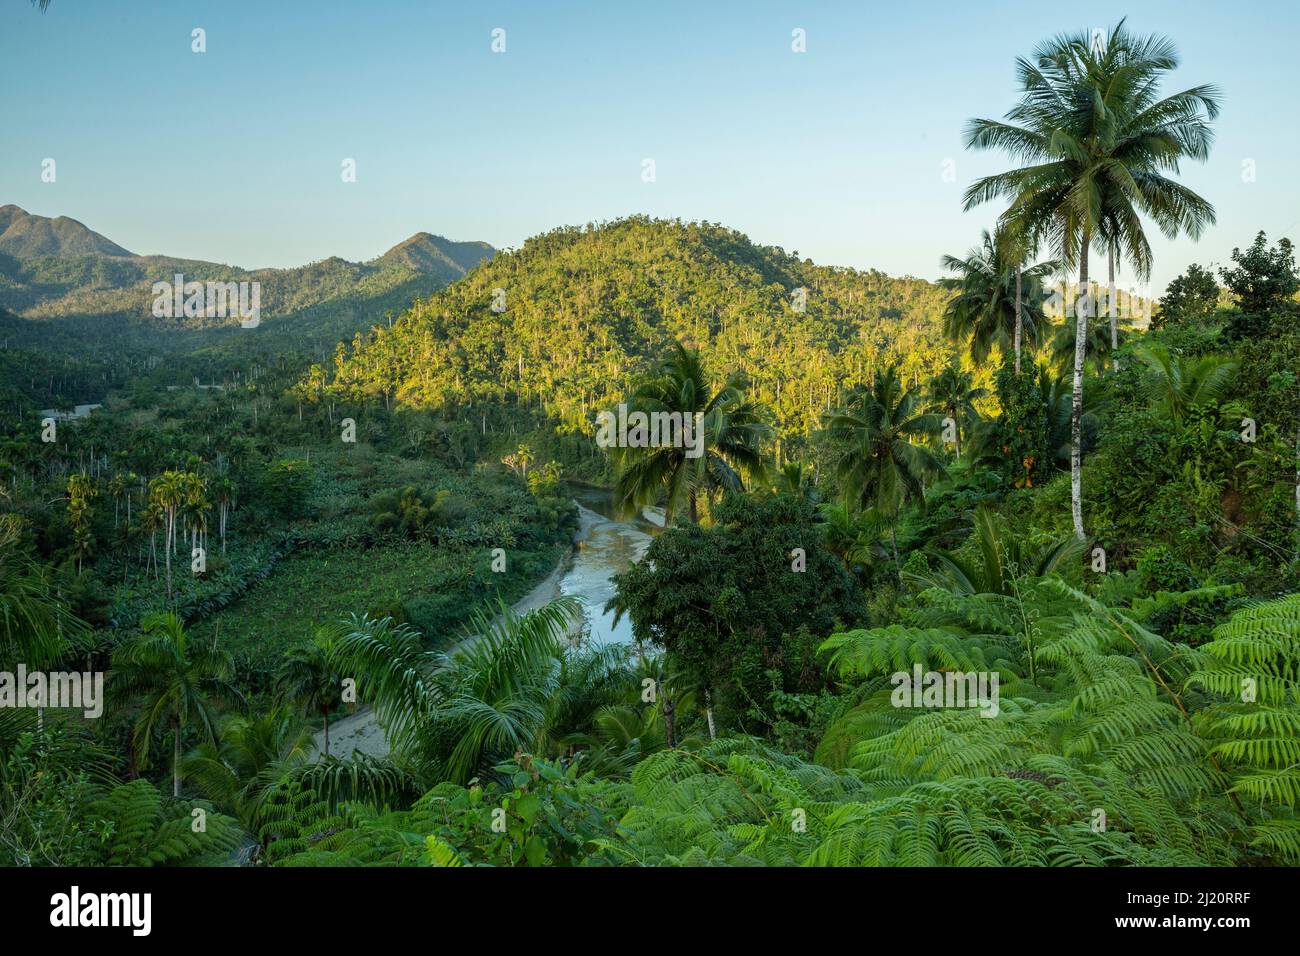 Rainforest vegetation in Chuchillas del Toa Biosphere Reserve near Quibijan, Cuba March 2019. Stock Photo